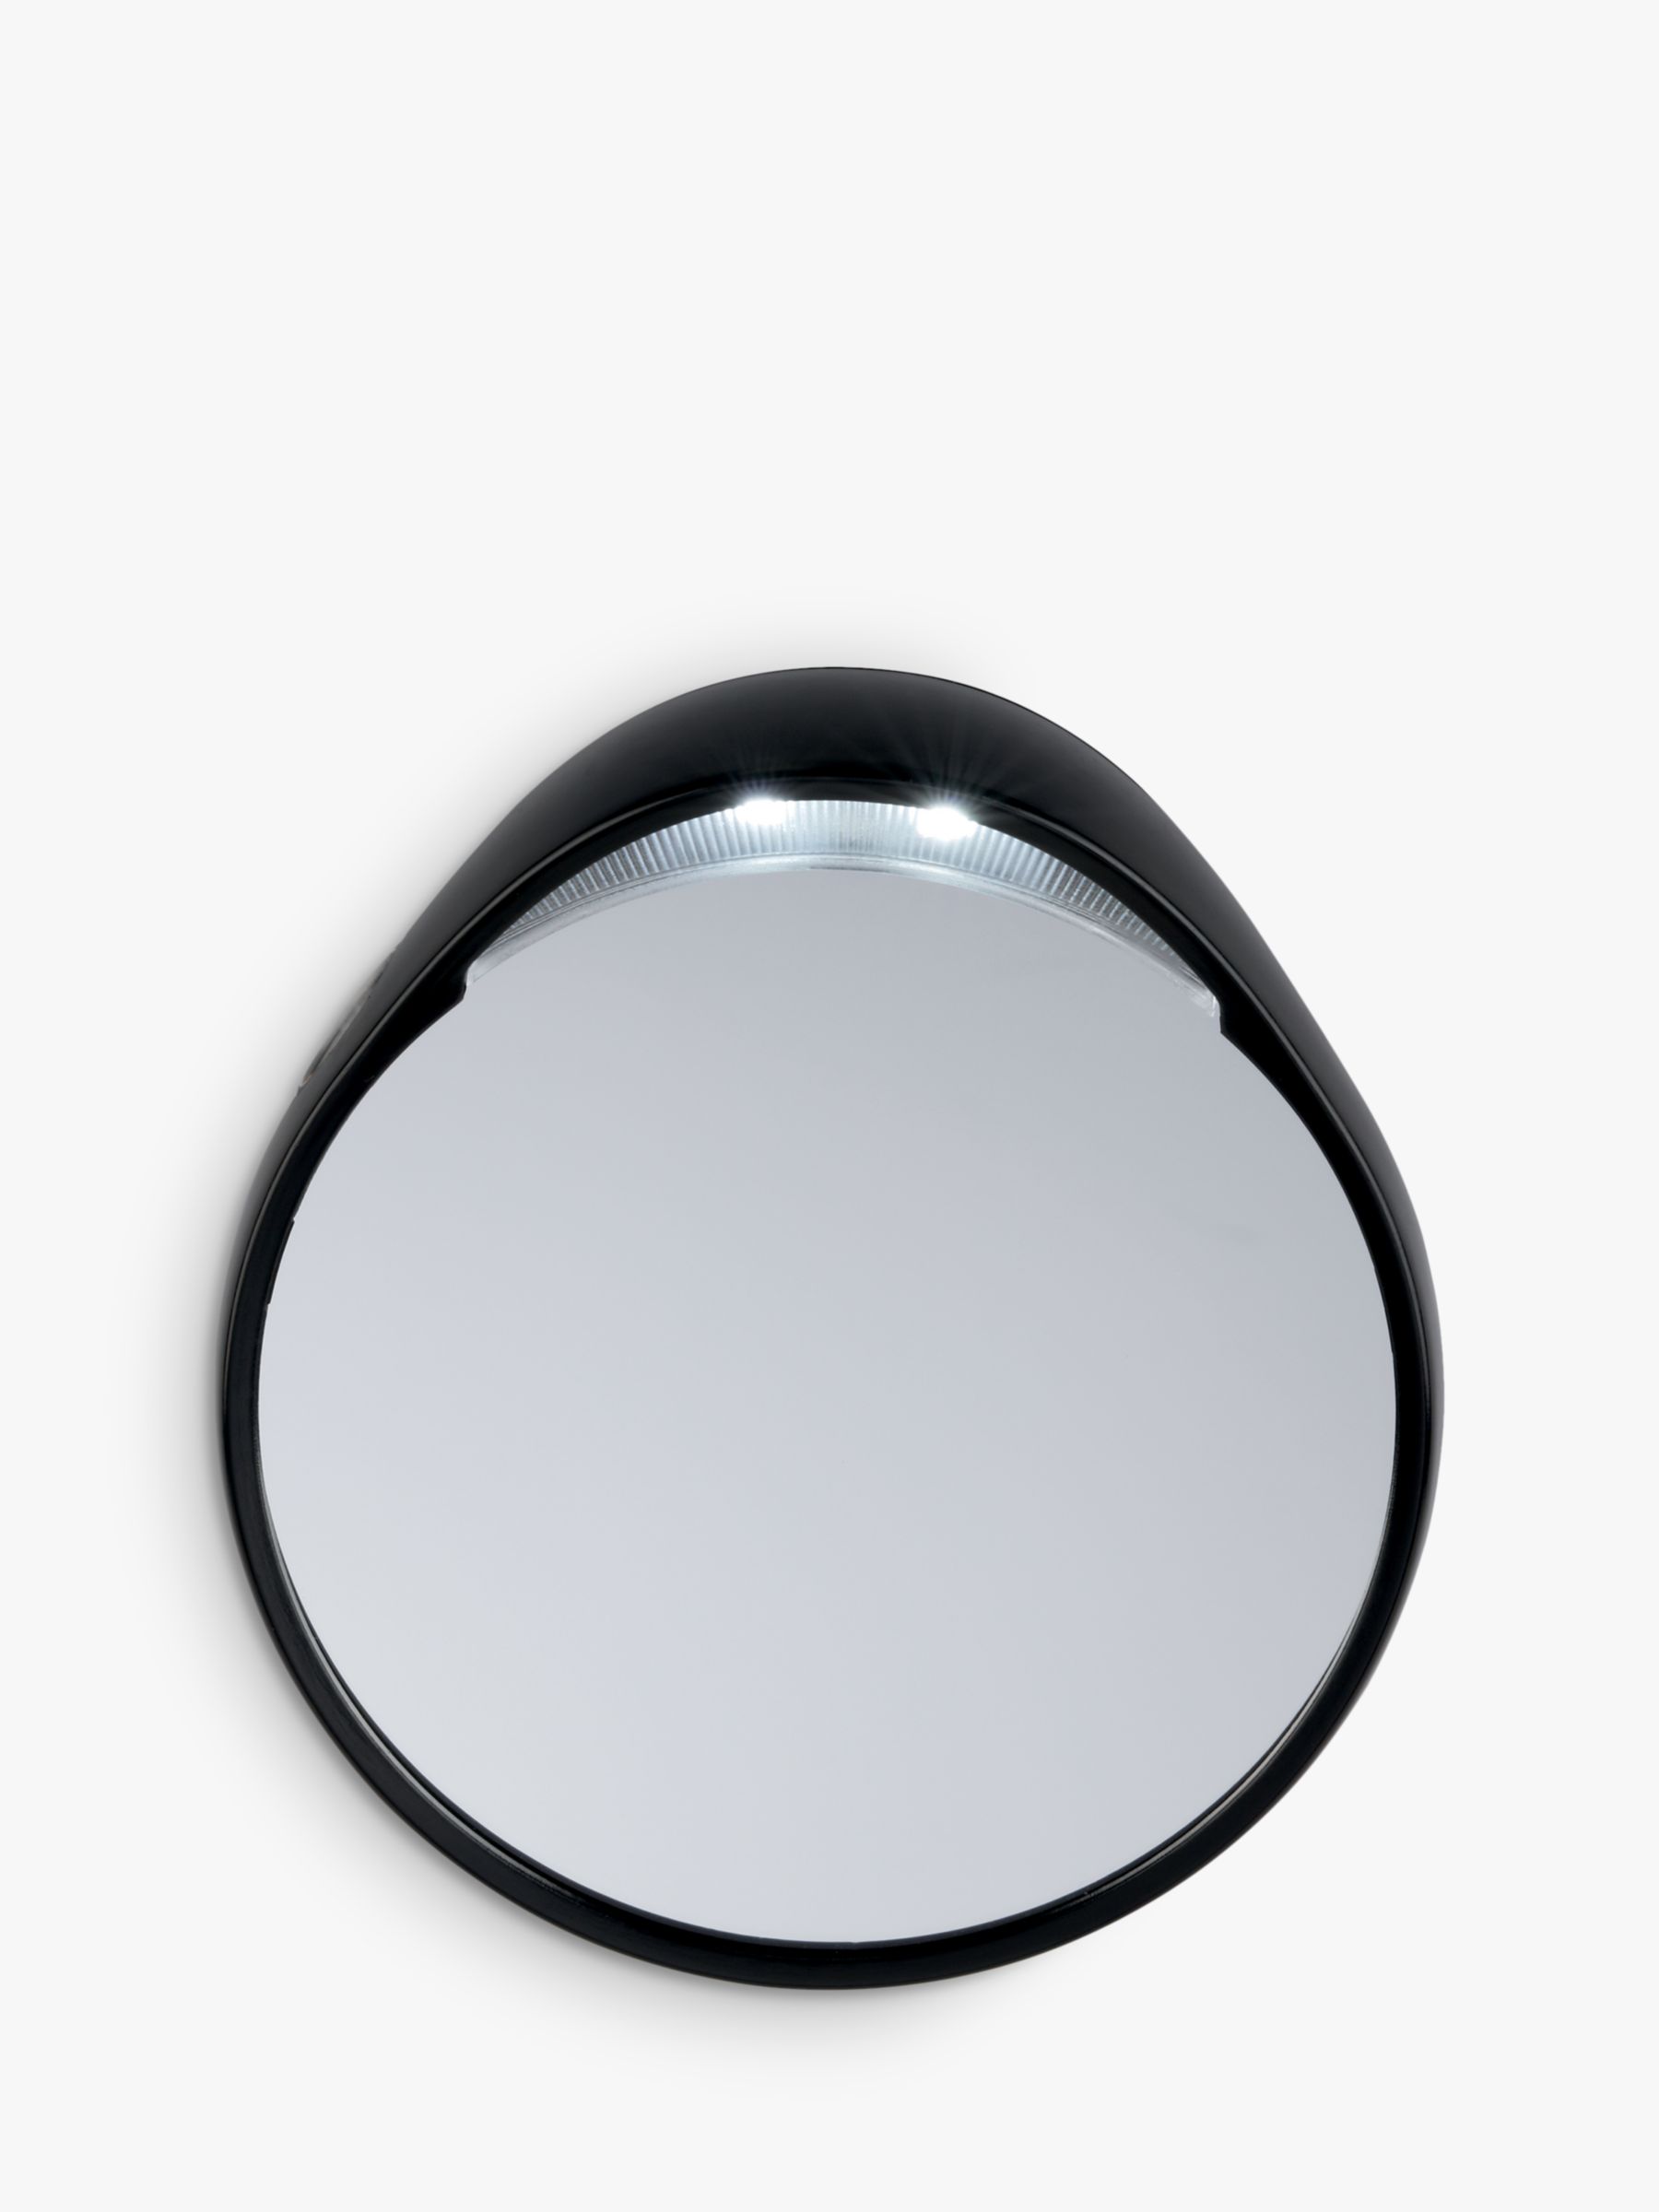 Tweezermate 10x Lighted Mirror, Silver 230617397